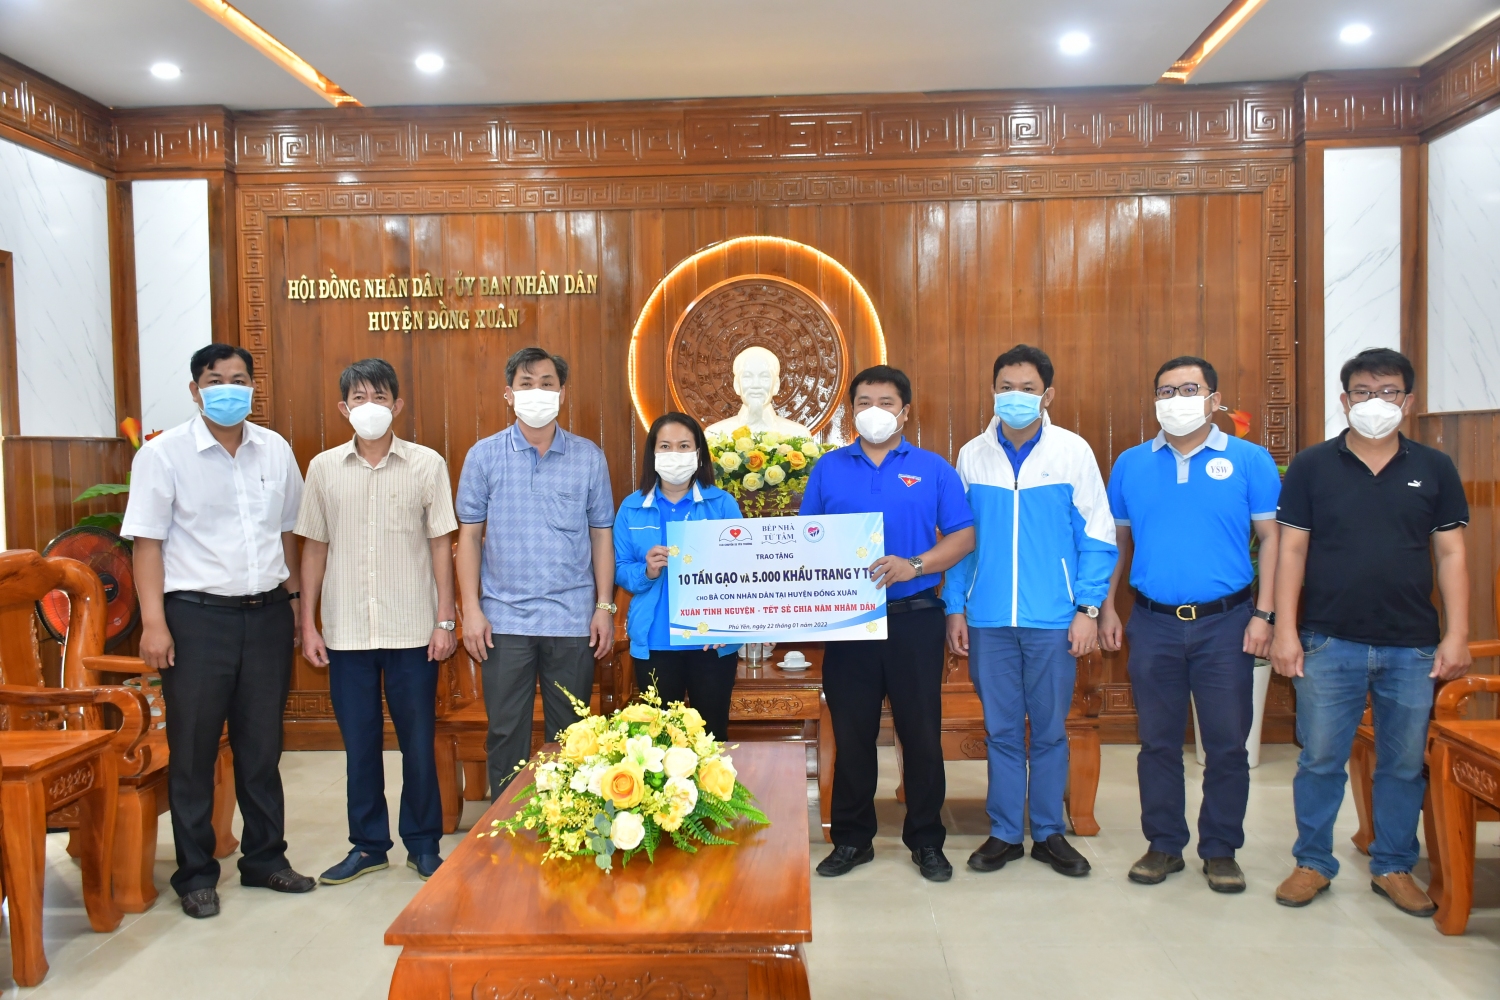 Đoàn trao tặng bảng tượng trưng hỗ trợ gạo và khẩu trang y tế cho lãnh đạo địa phương huyện Đồng Xuân để hỗ trợ bà con Nhân dân.